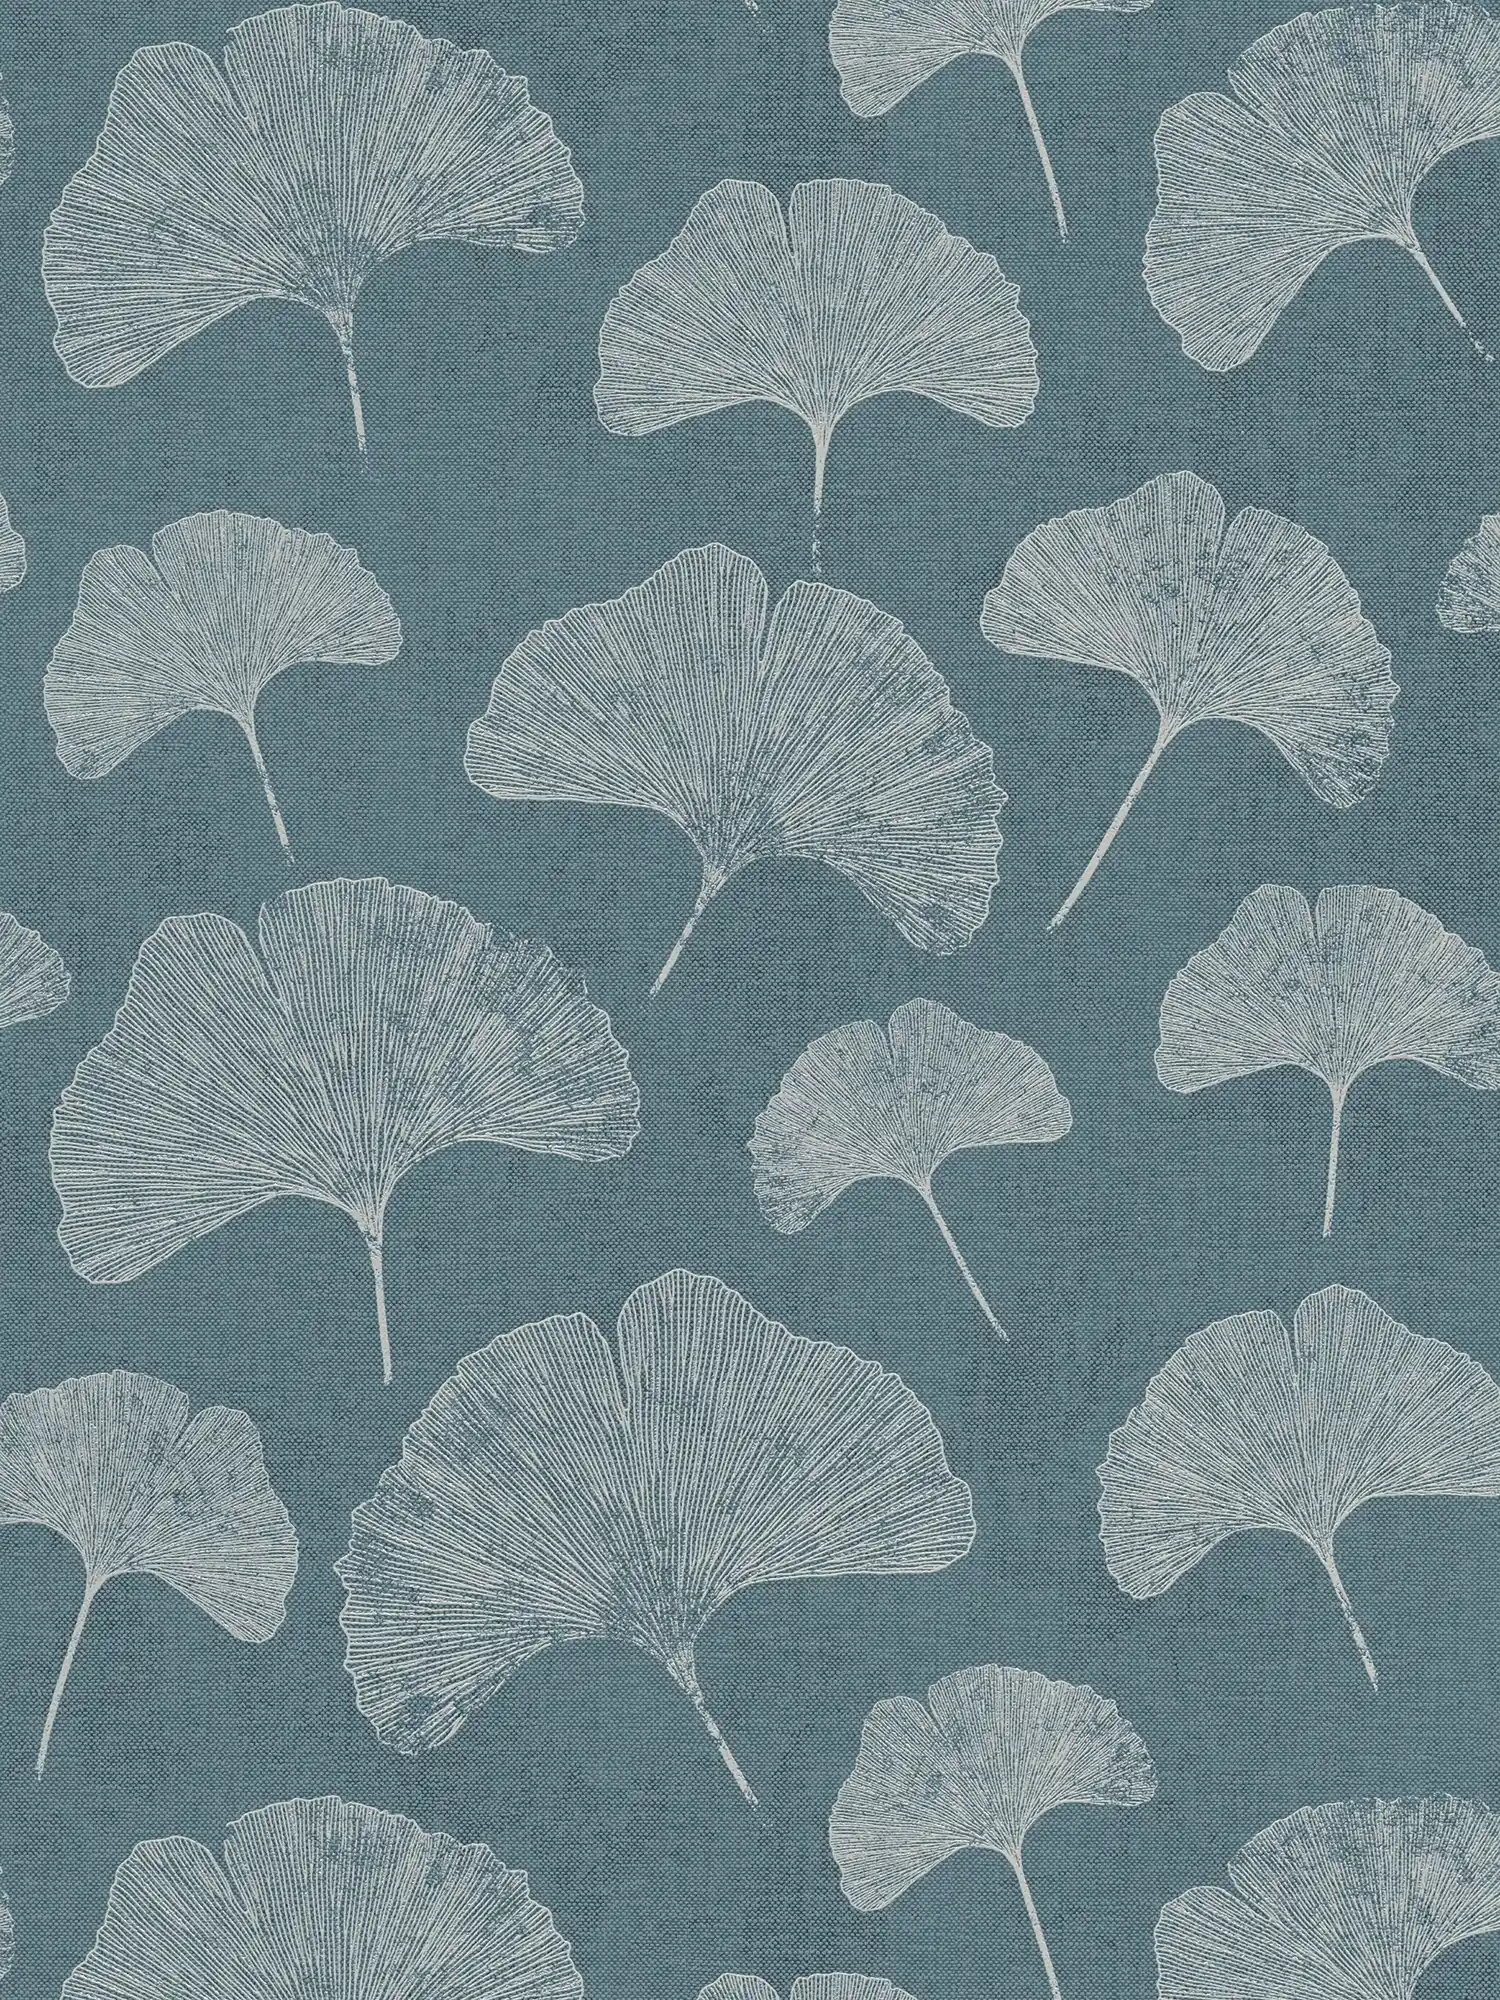 Florale Tapete mit Blättern matt strukturiert – Blau, Weiß, Silber
